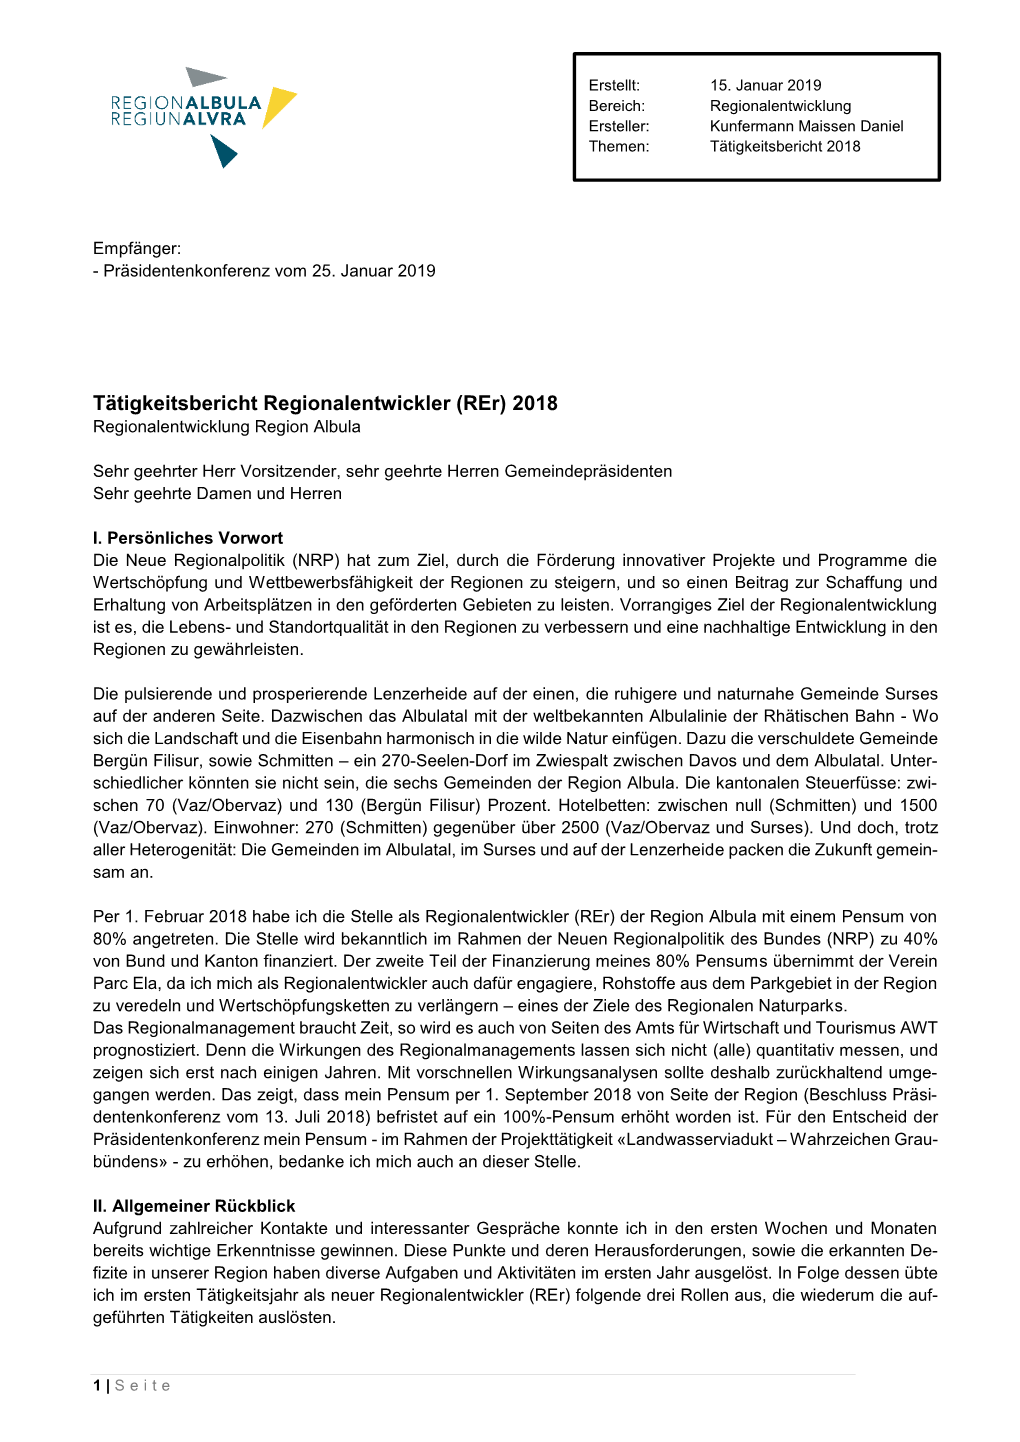 Tätigkeitsbericht Regionalentwickler (Rer) 2018 Regionalentwicklung Region Albula